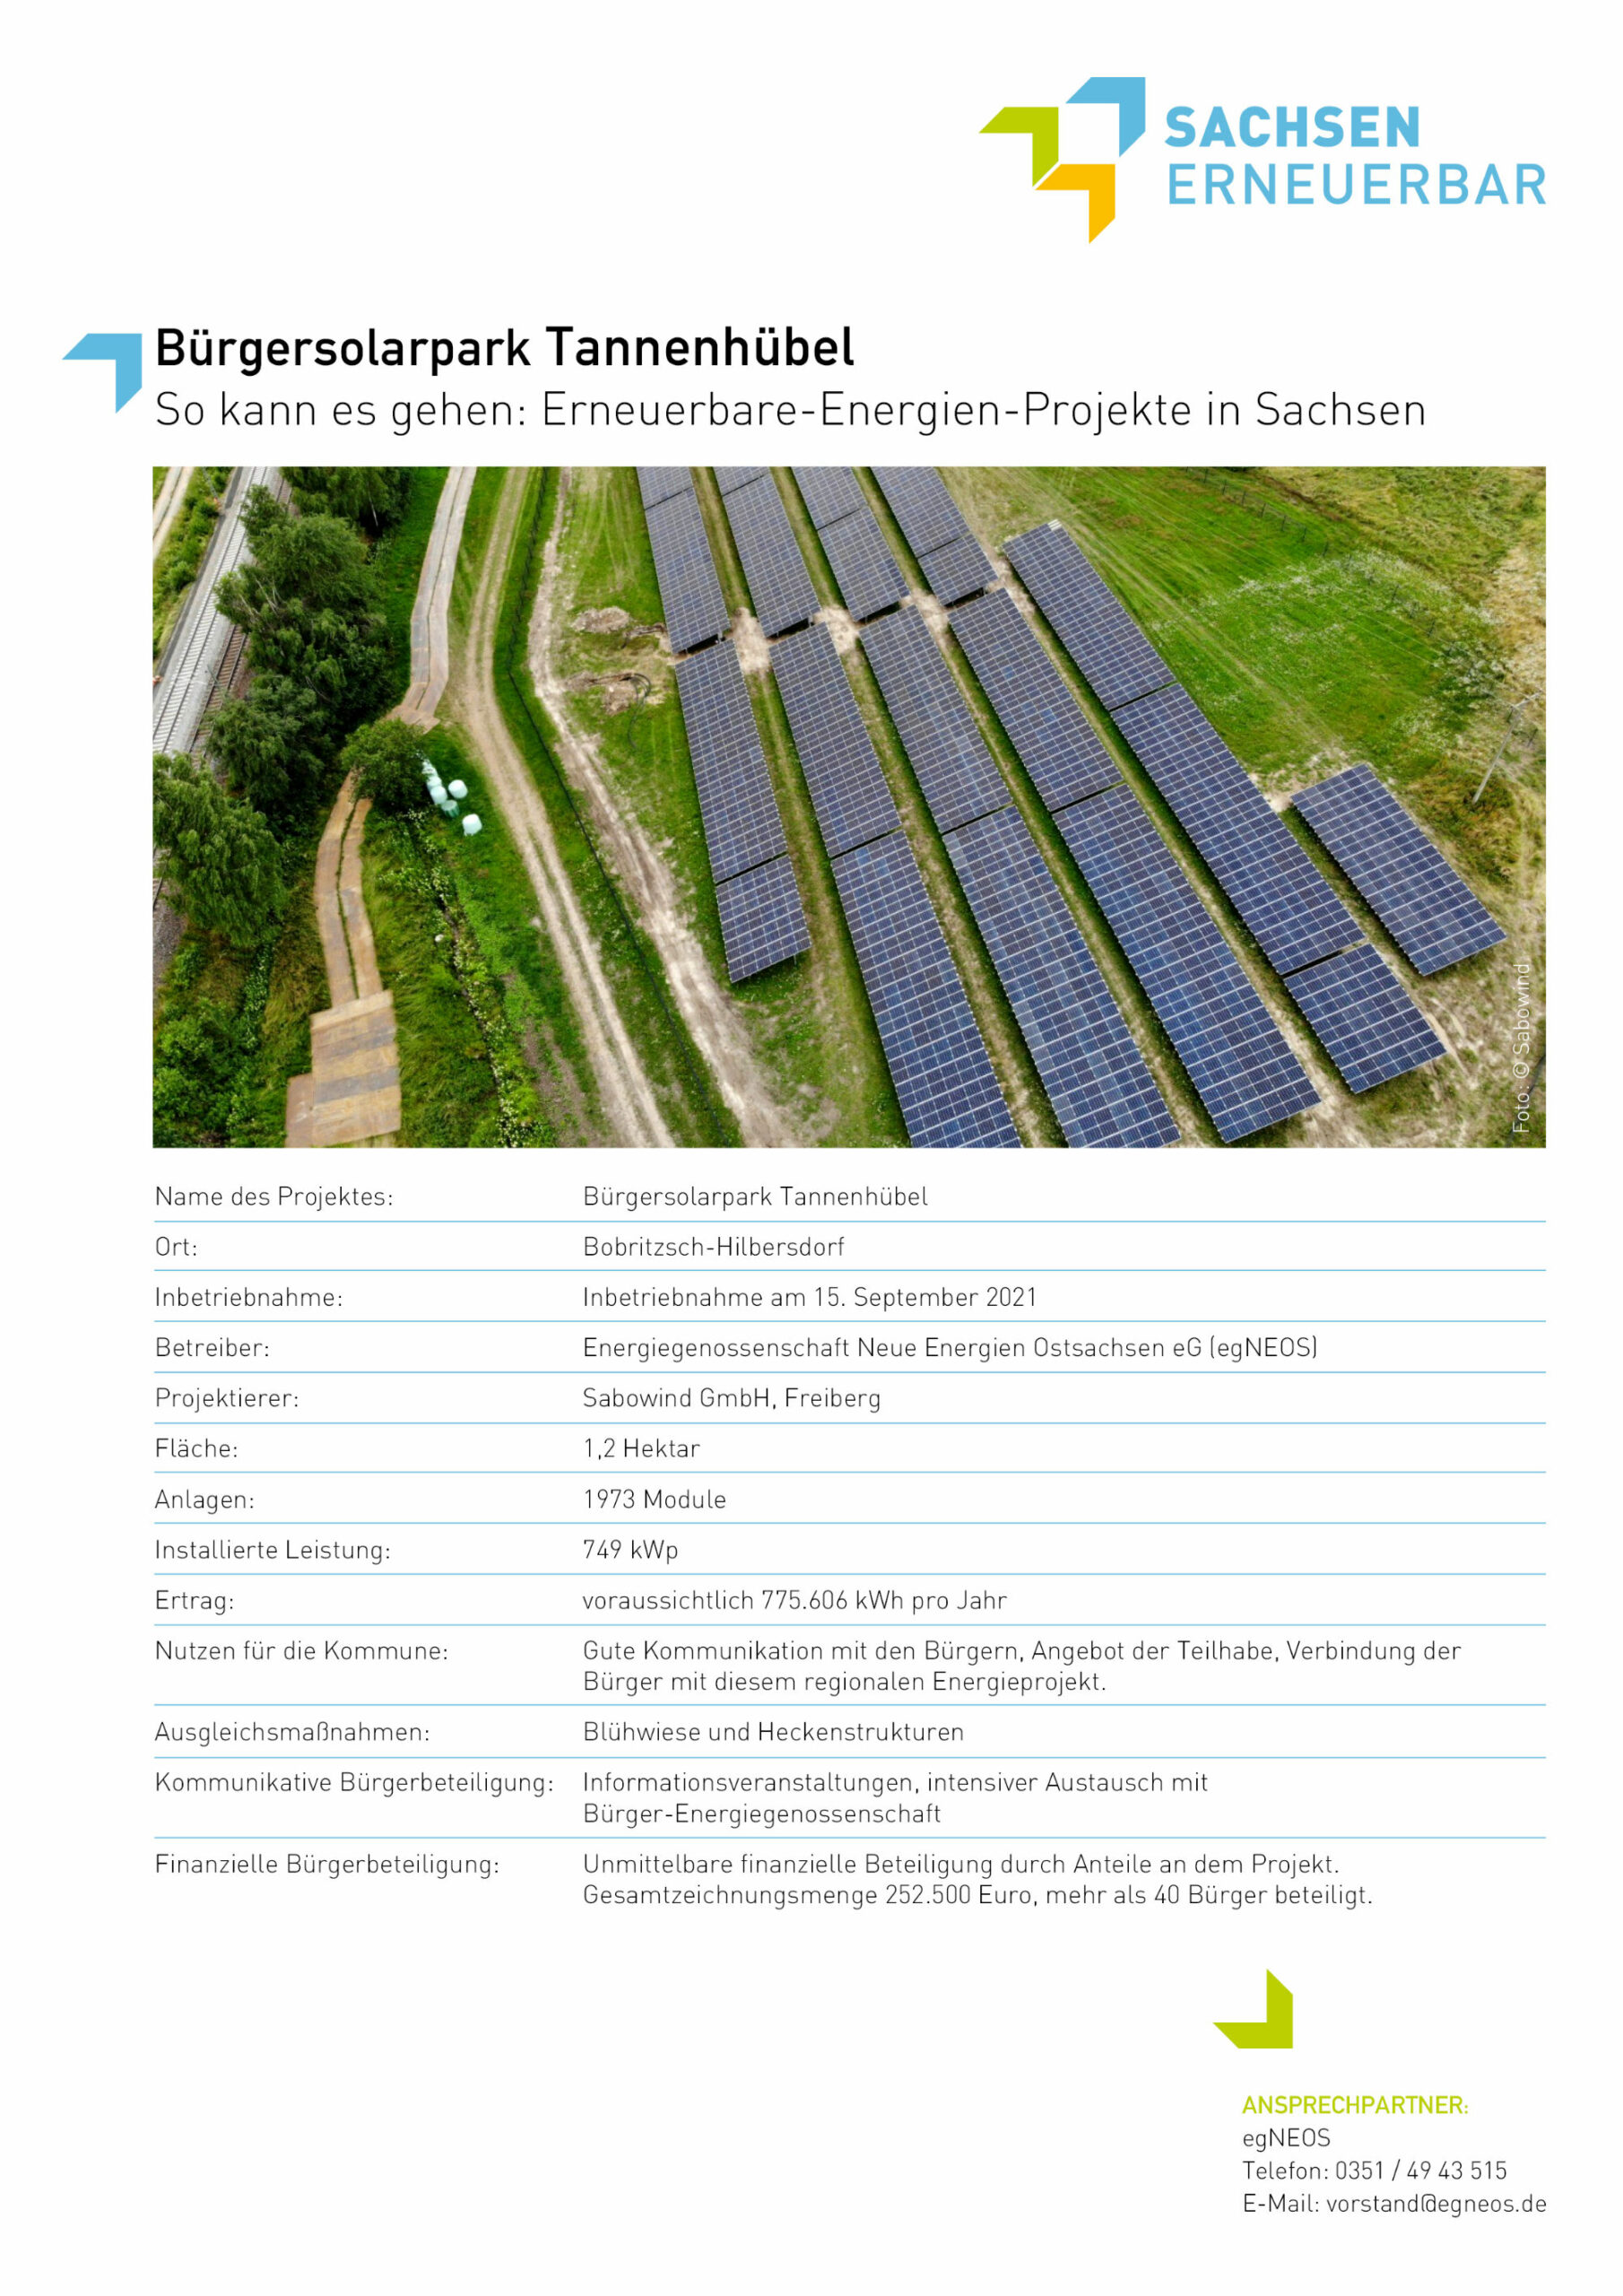 Beispiele für Erneuerbare-Energien-Projekte - Bürgersolarpark Tannenhübel